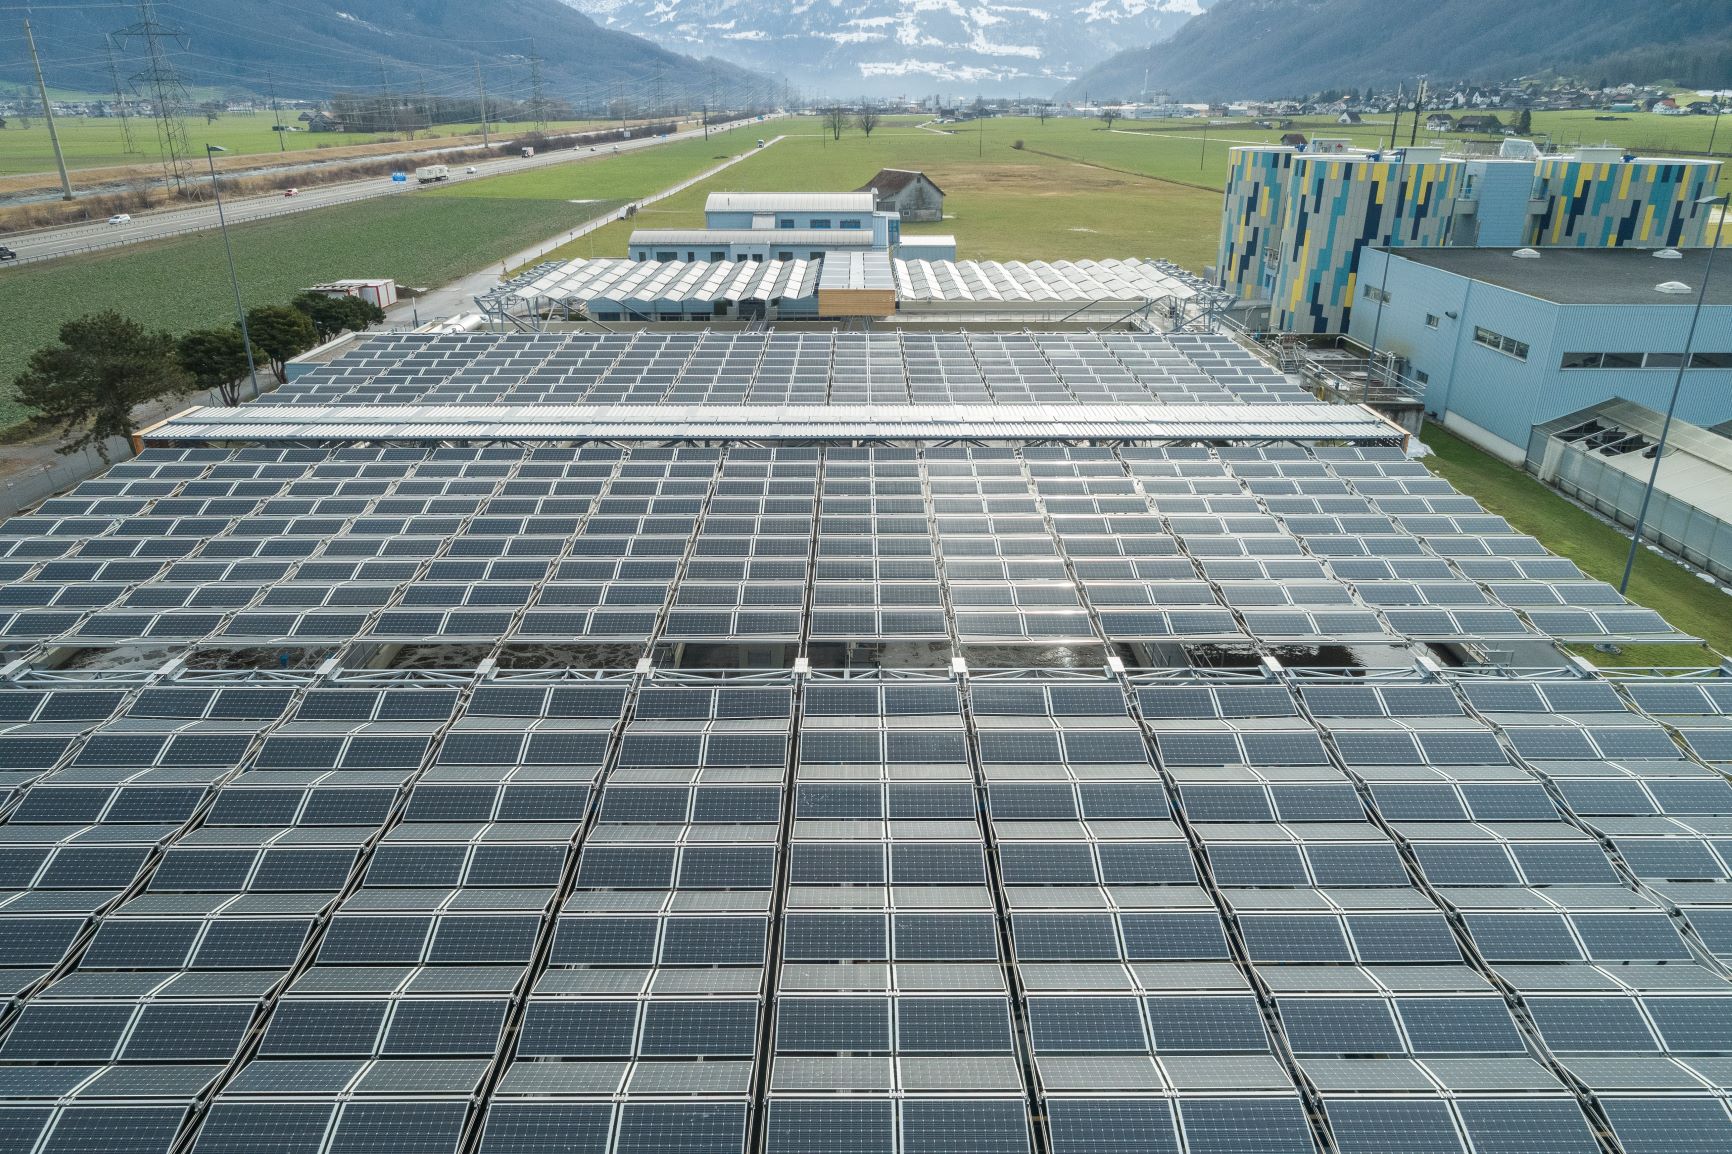 Luftaufnahme Solarfaltdach | Kläranlage Glarnerland (GL) | © dhp technology